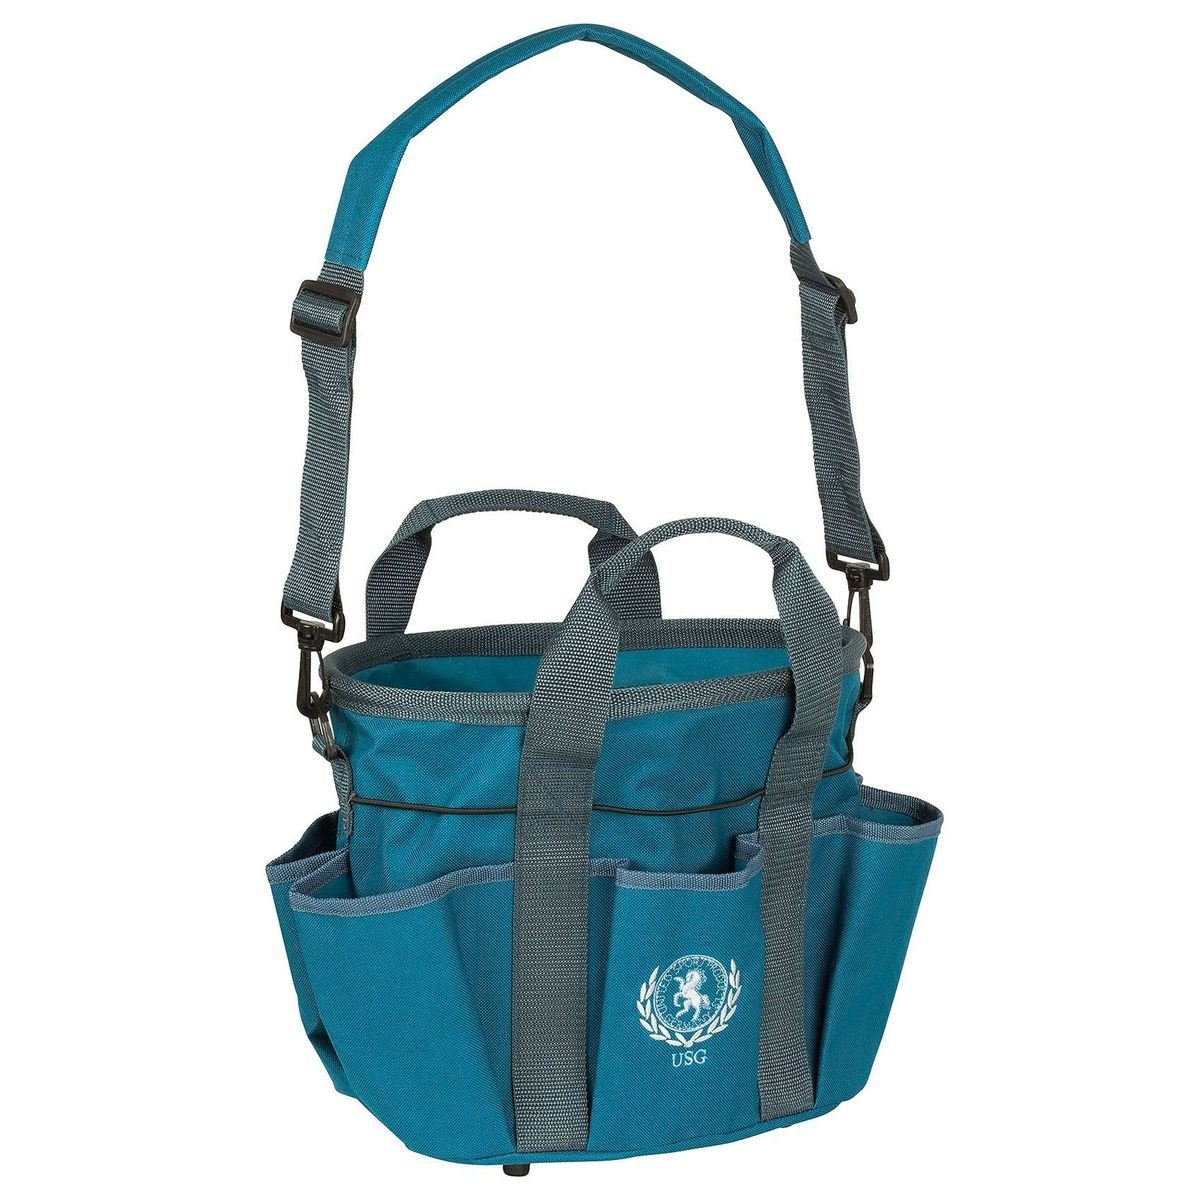 USG Putztasche Pferdeputztasche mit gepolsterten Trageriemen und 6 Seitentaschen, wasserabweisend